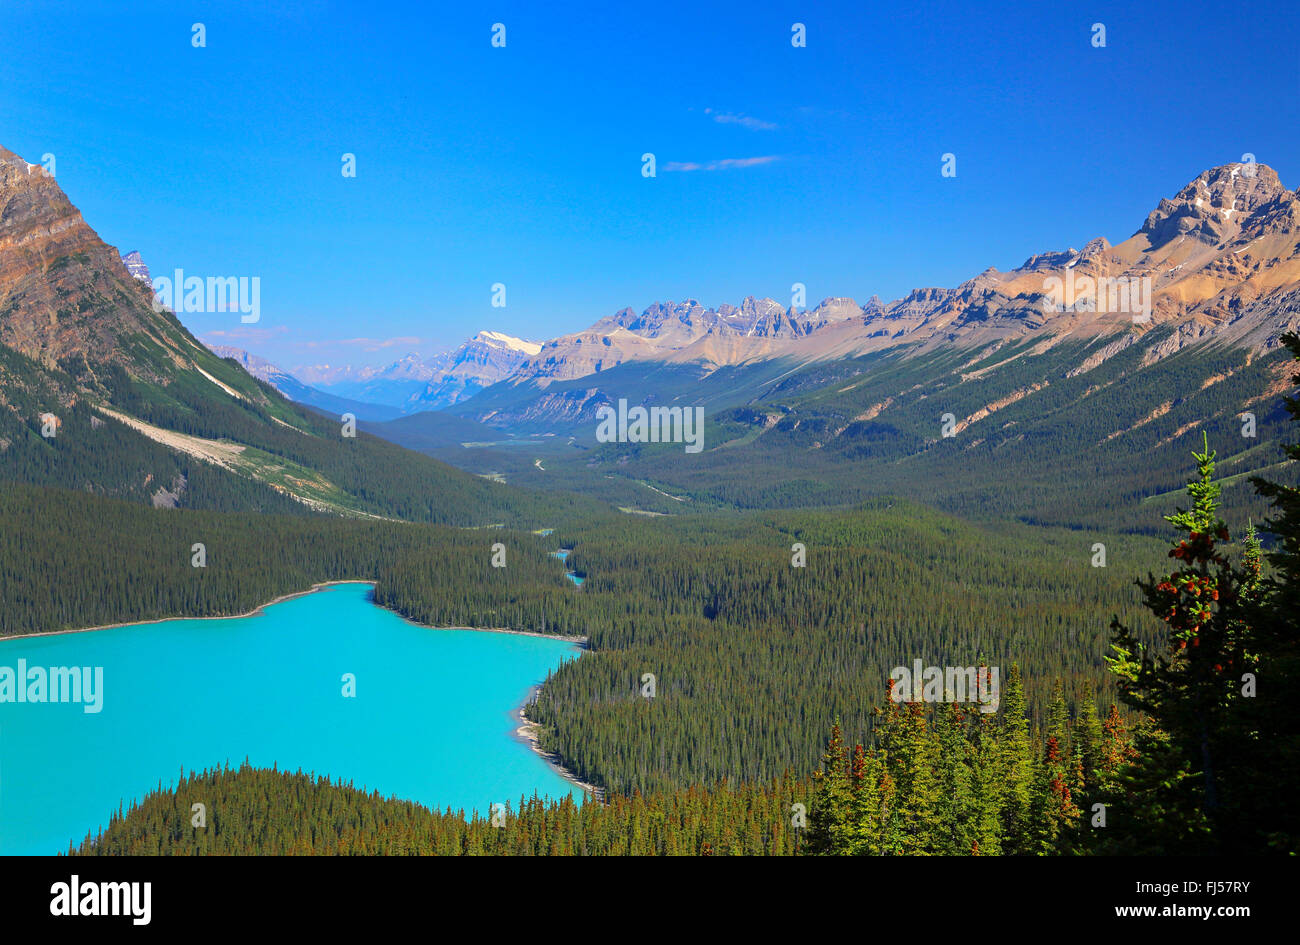 Le lac Peyto avec de l'eau bleu turquoise, montagnes Rocheuses, Canada, Alberta, parc national de Banff Banque D'Images